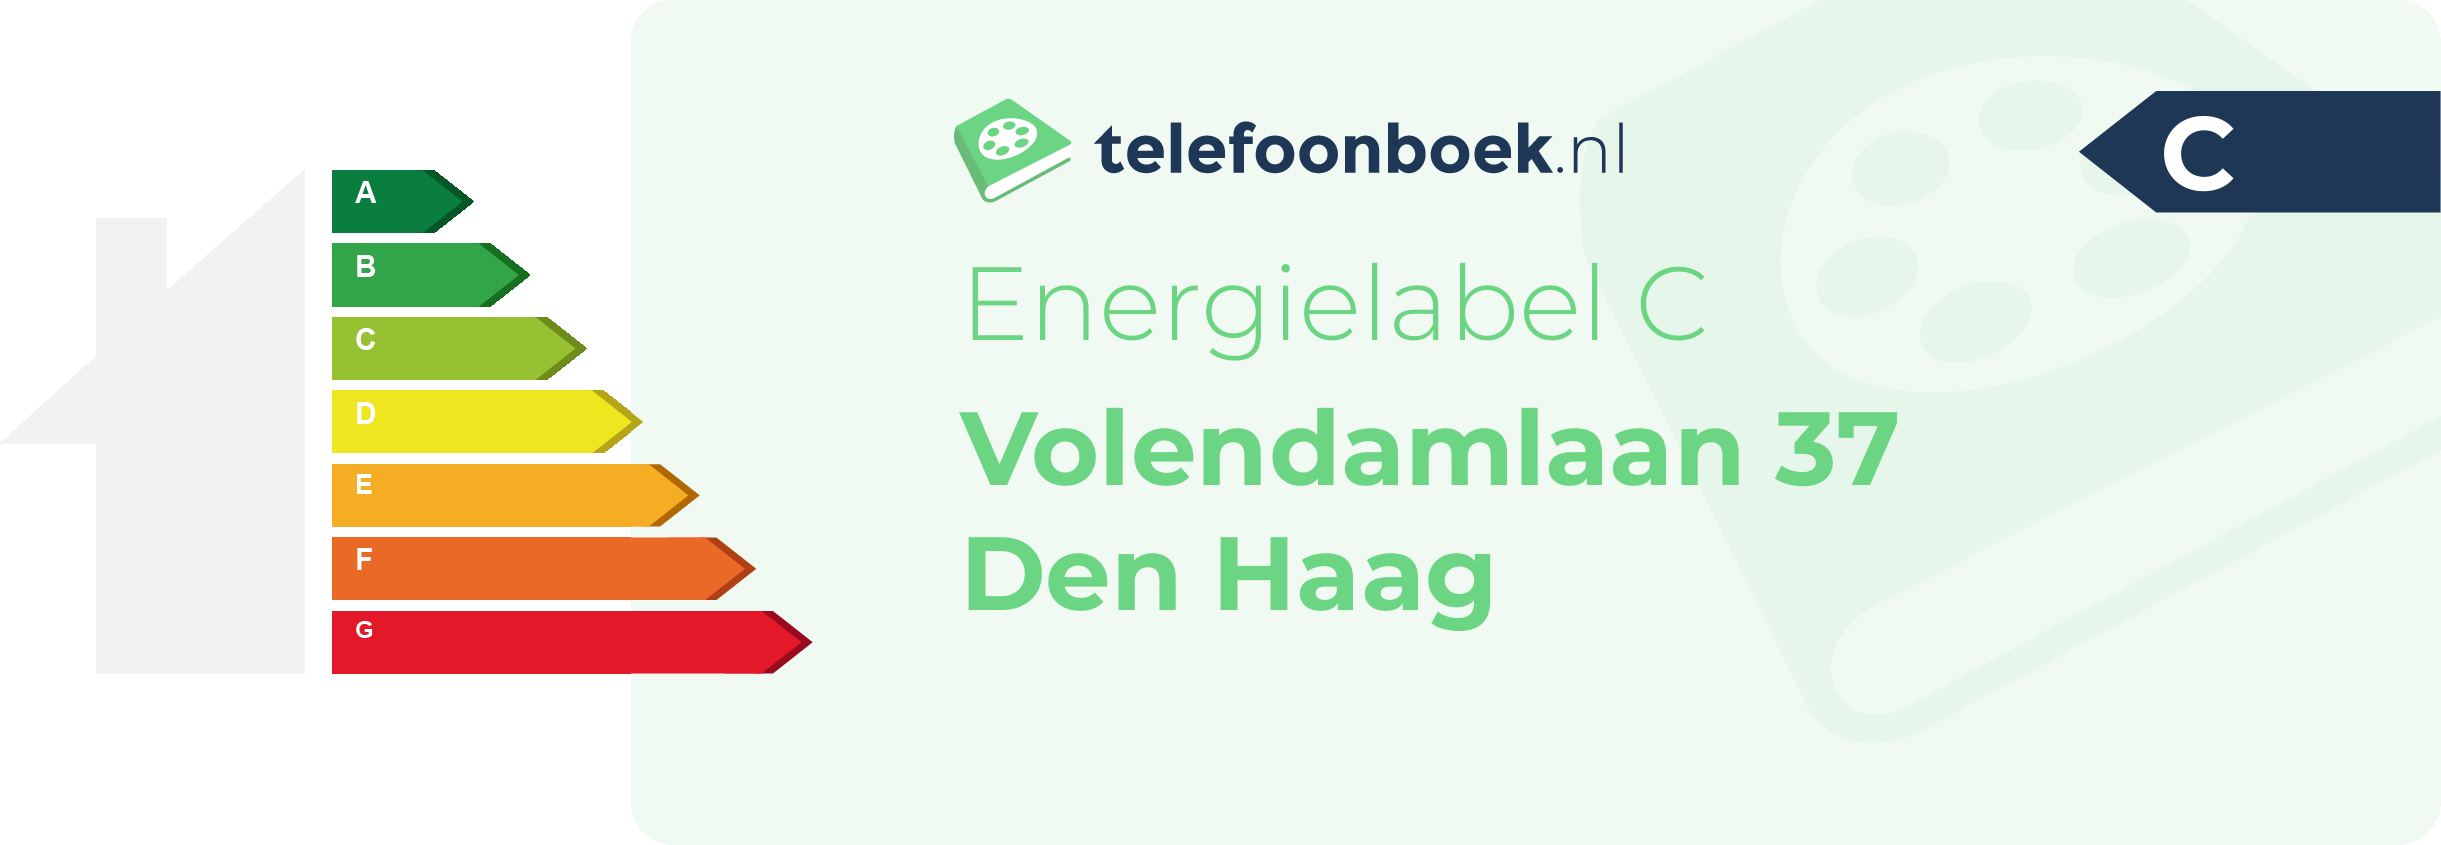 Energielabel Volendamlaan 37 Den Haag